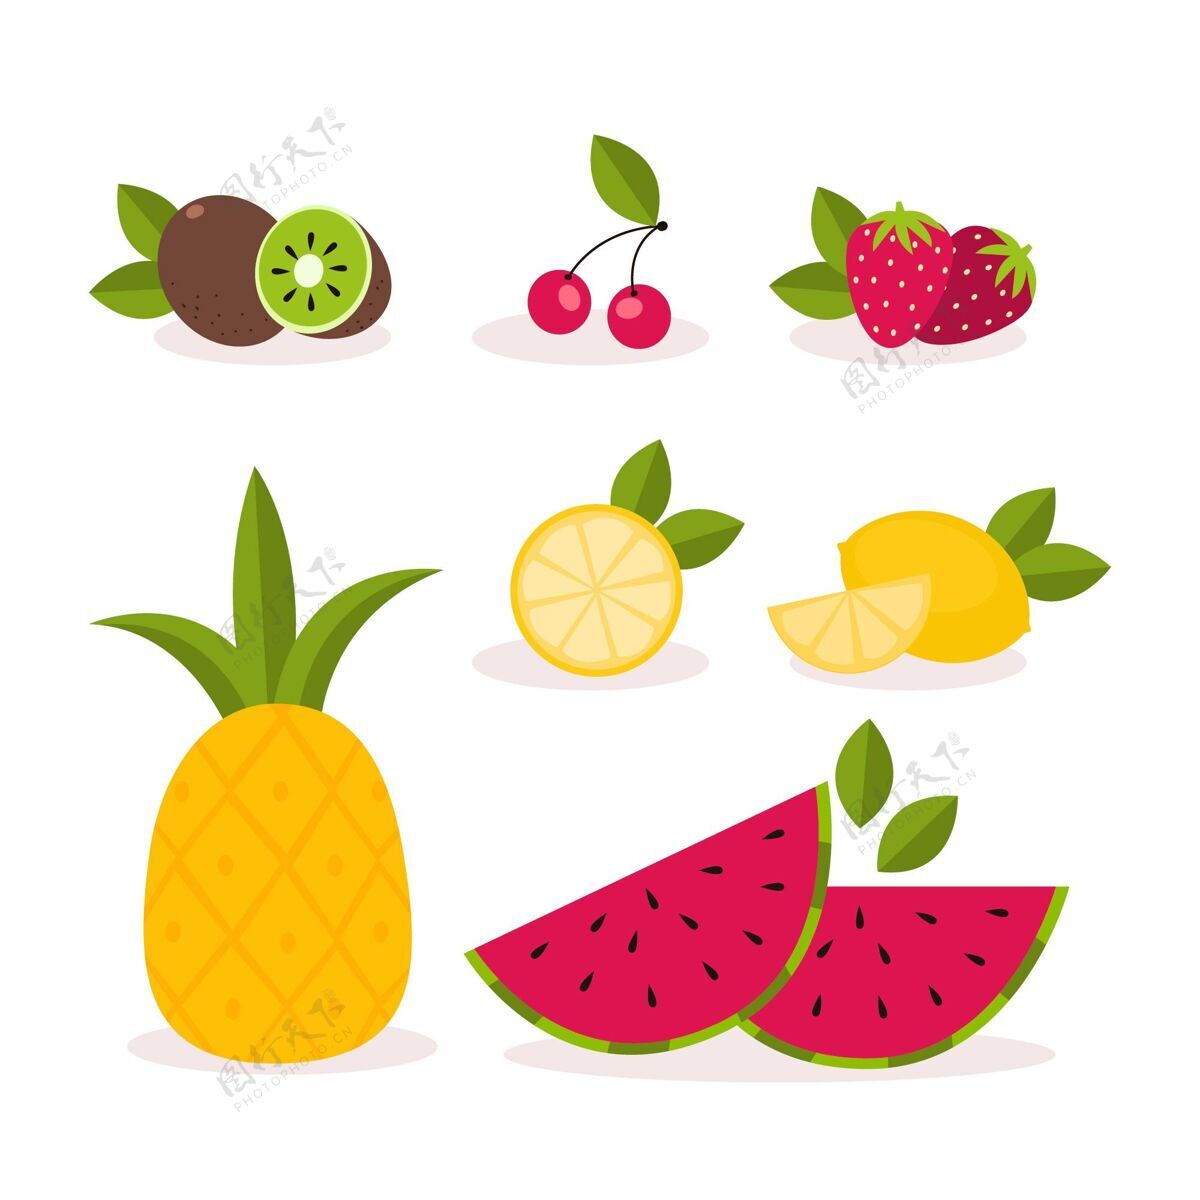 平面设计扁桃系列食品美味水果收藏